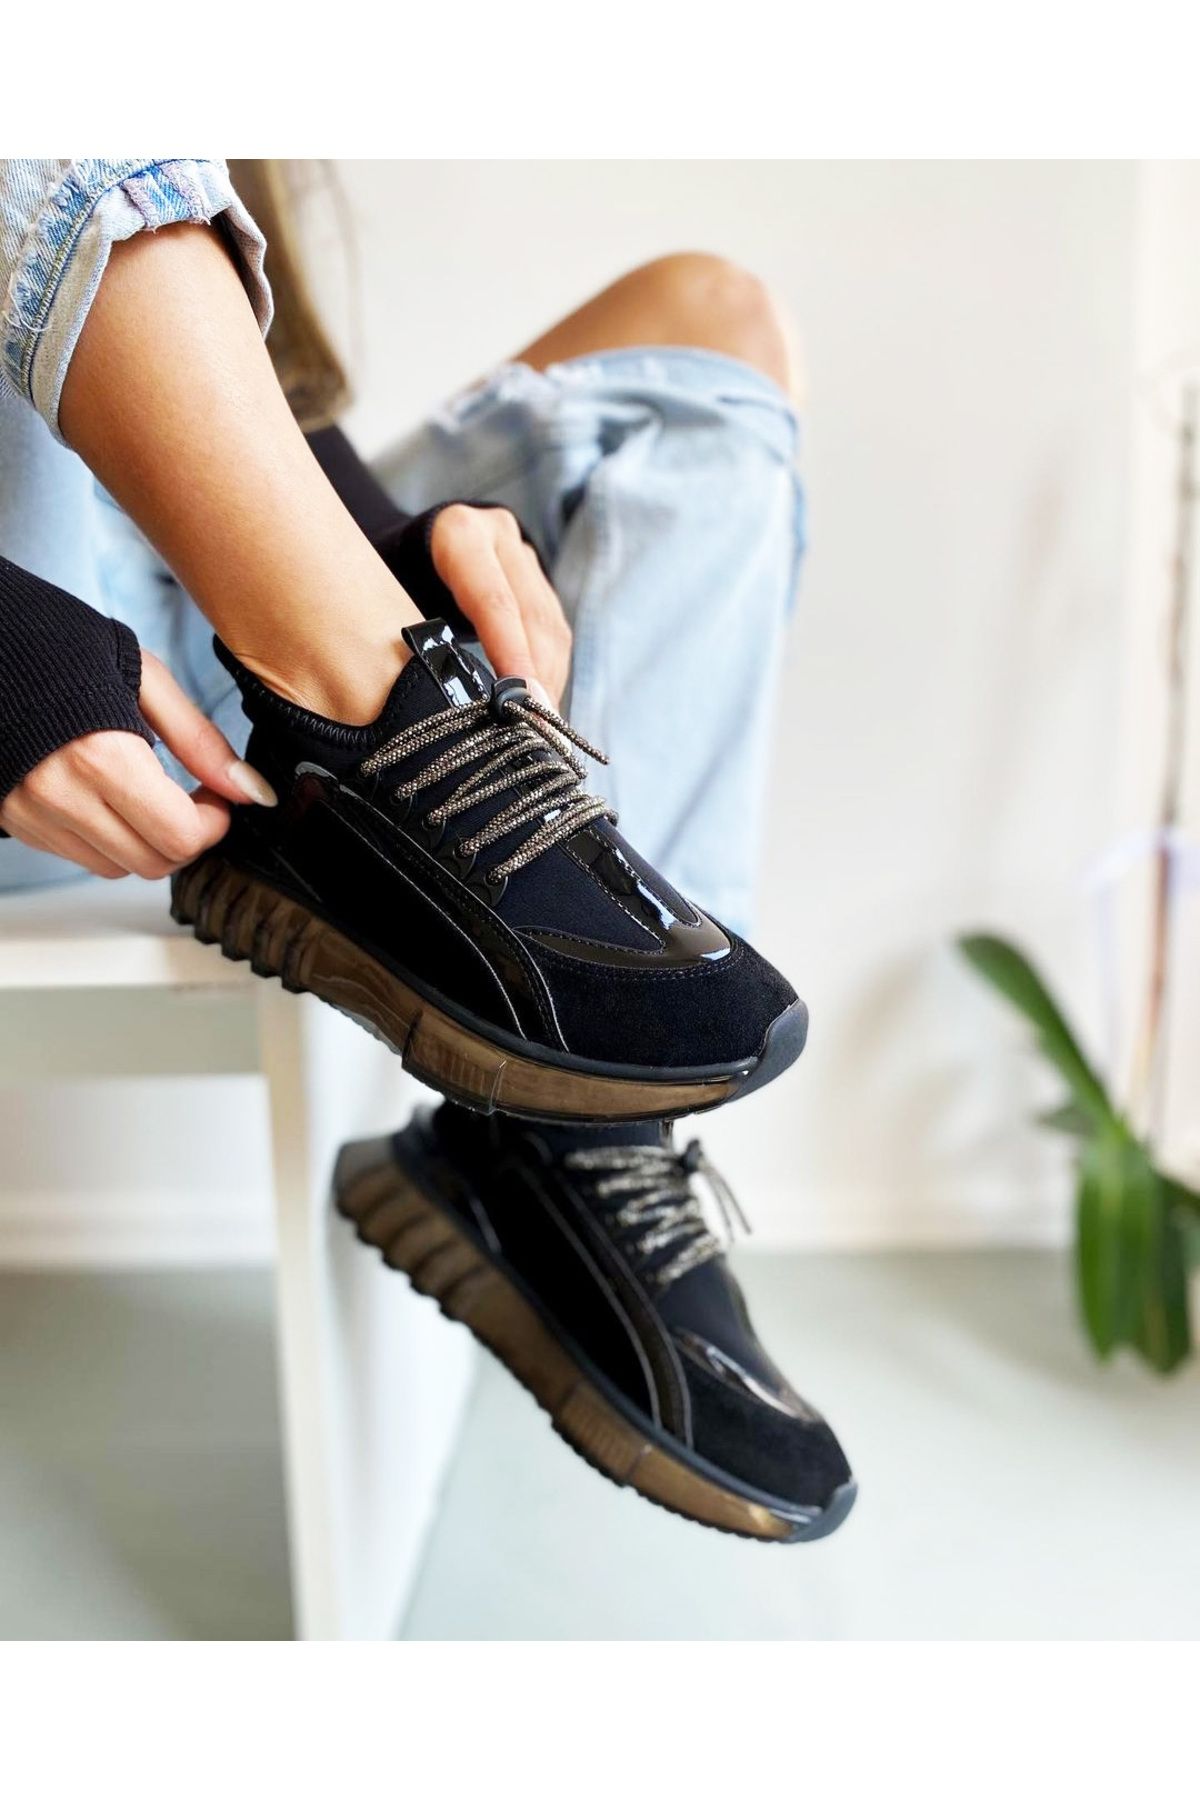 Afilli Kadın Siyah Rugan Süet Streç Şeffaf Kalın Platform Taban Taşlı Parlak Sneaker Günlük Spor Ayakkabı